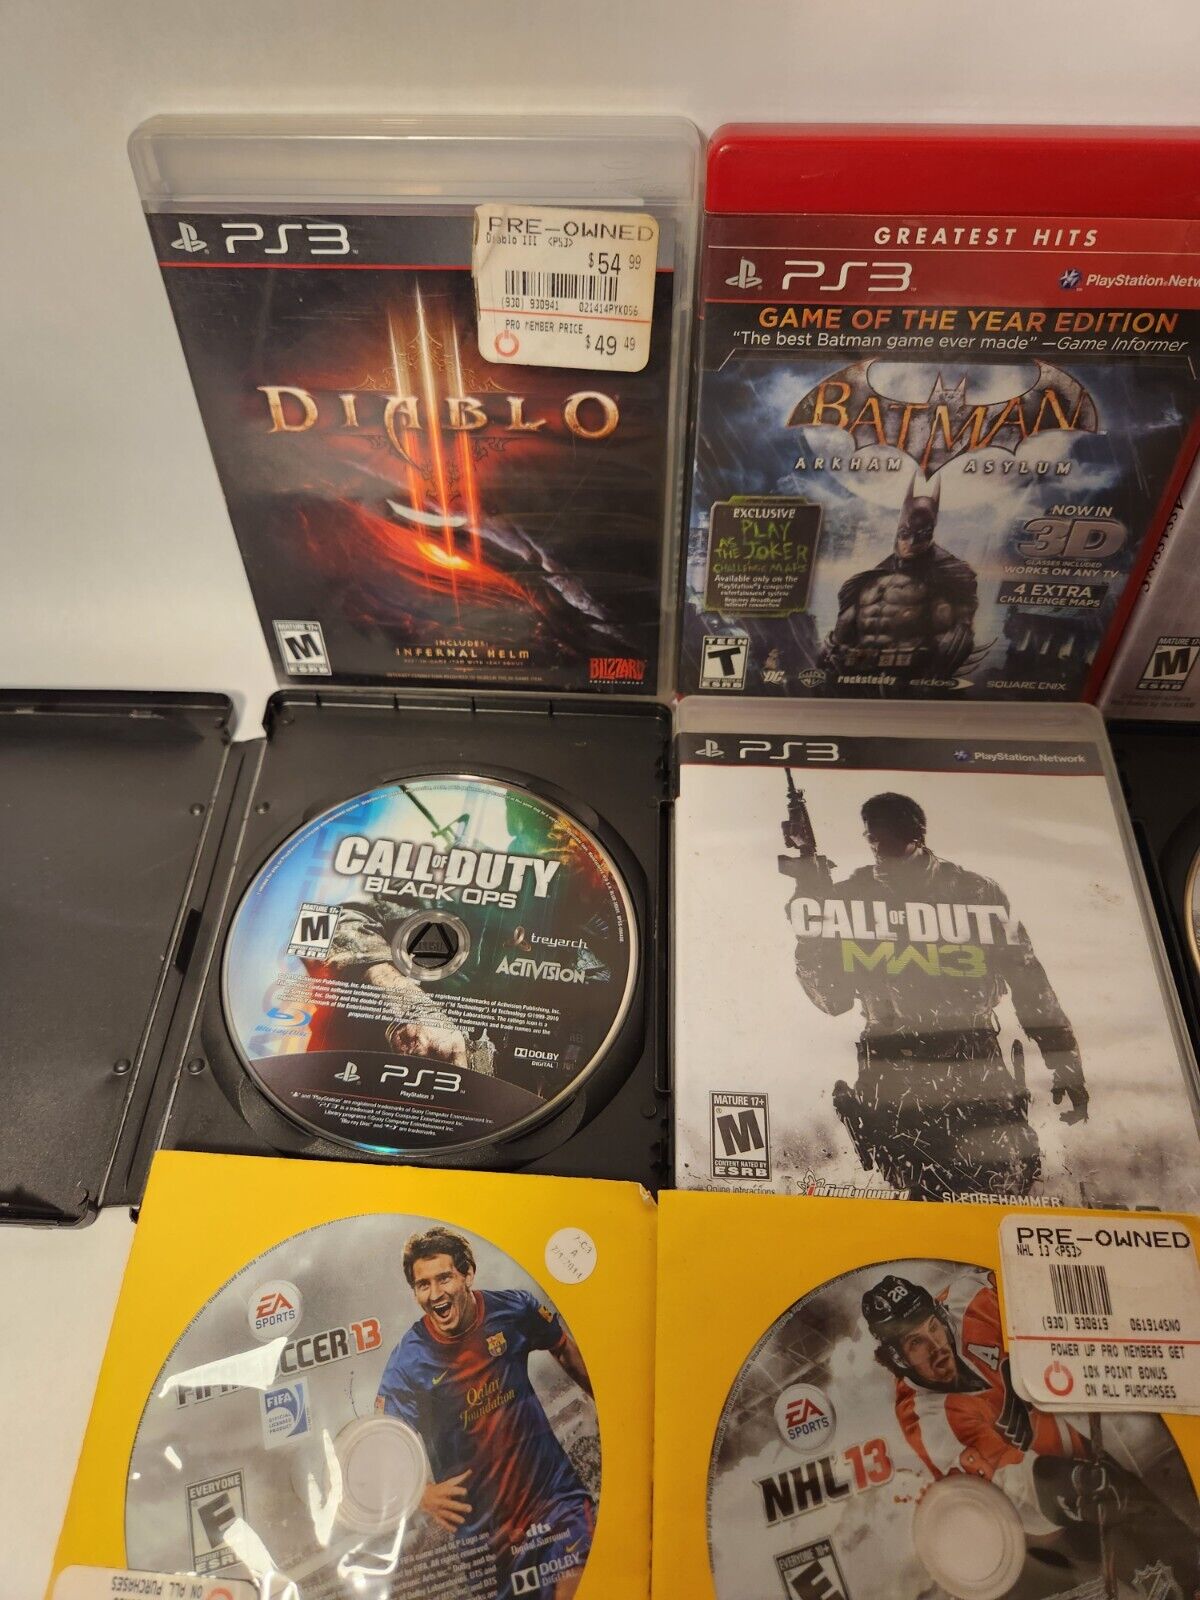 9 PS3 Games Bundle Lot - Diablo 3, Batman, Assassin's Creed, Call Of Duty, God